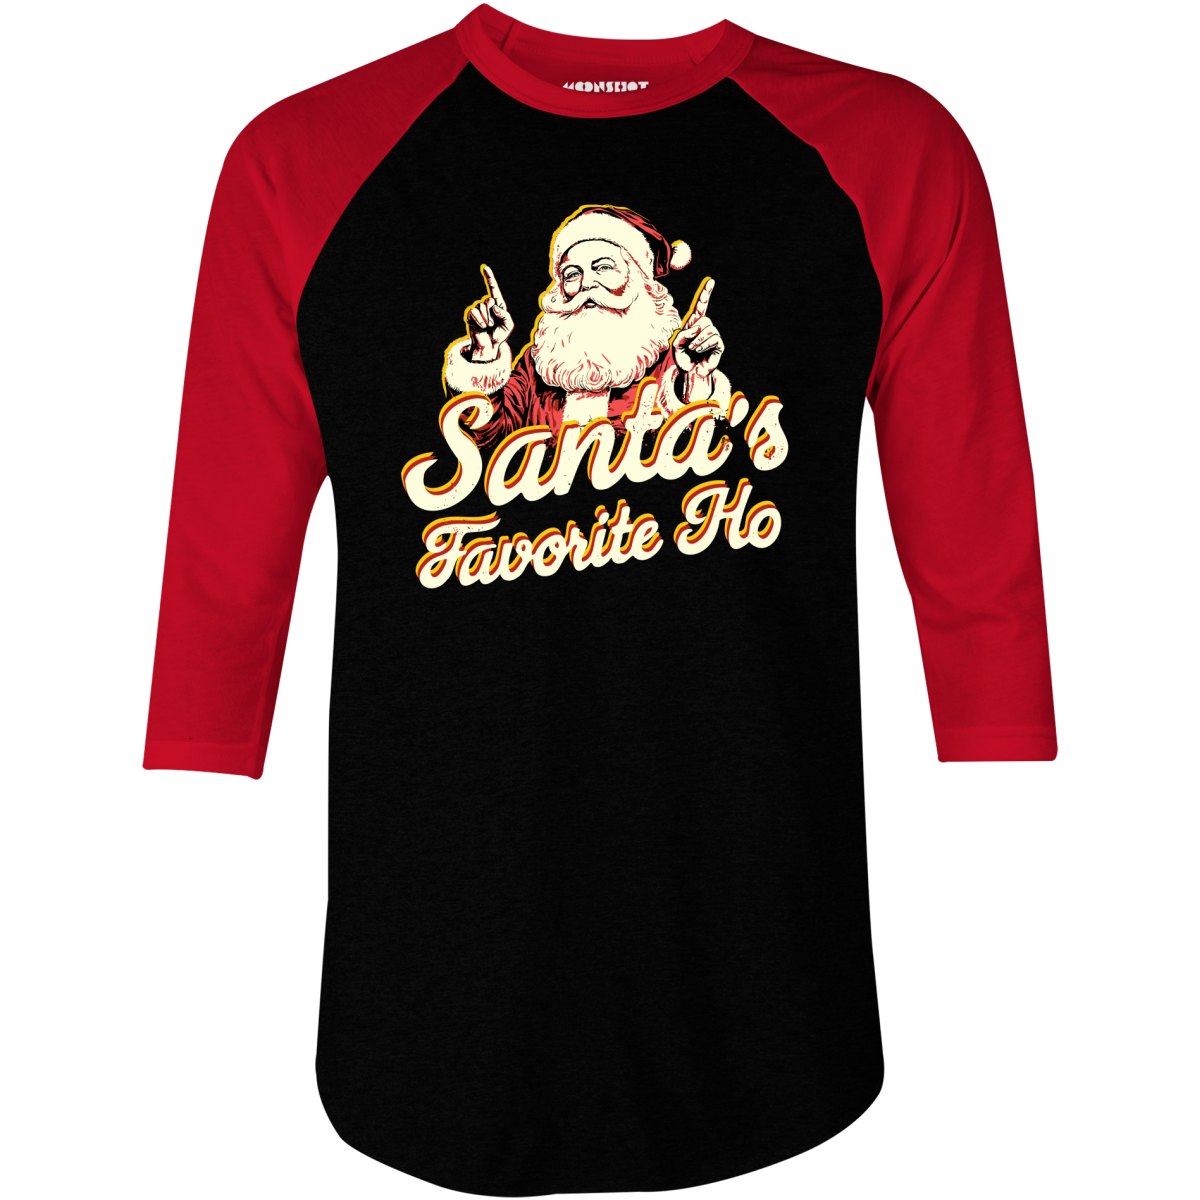 Santa's Favorite Ho v2 - 3/4 Sleeve Raglan T-Shirt